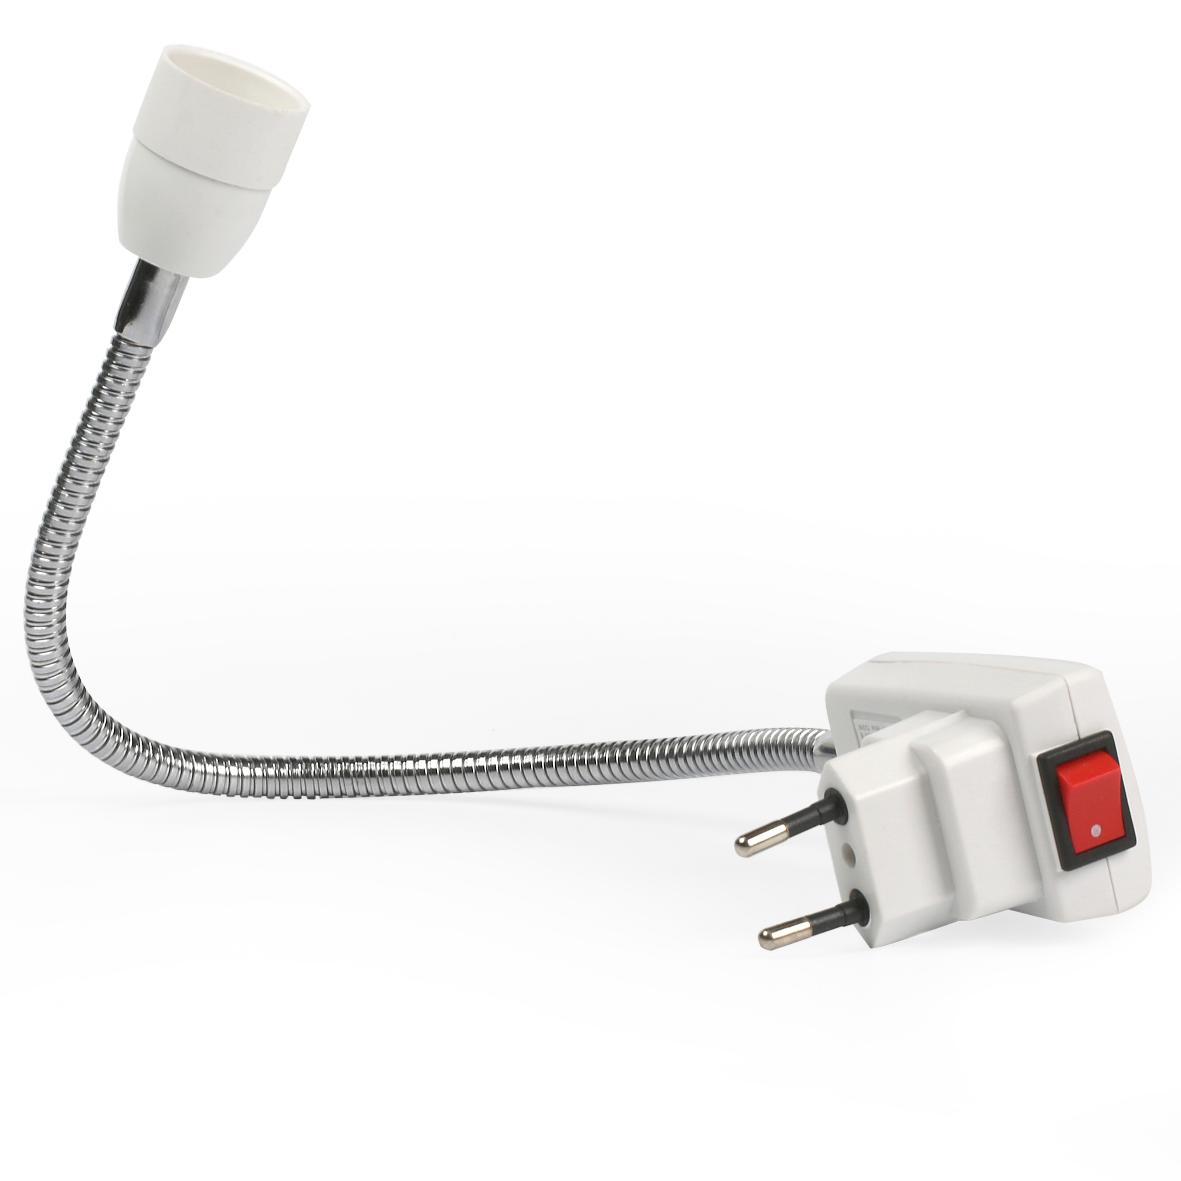 Переходник вилка-патрон пластиковый Smart Buy для светодиодных/накаливания/энергосберегающих ламп, гибкий, с выключателем, белый ( SBL-NL-001)